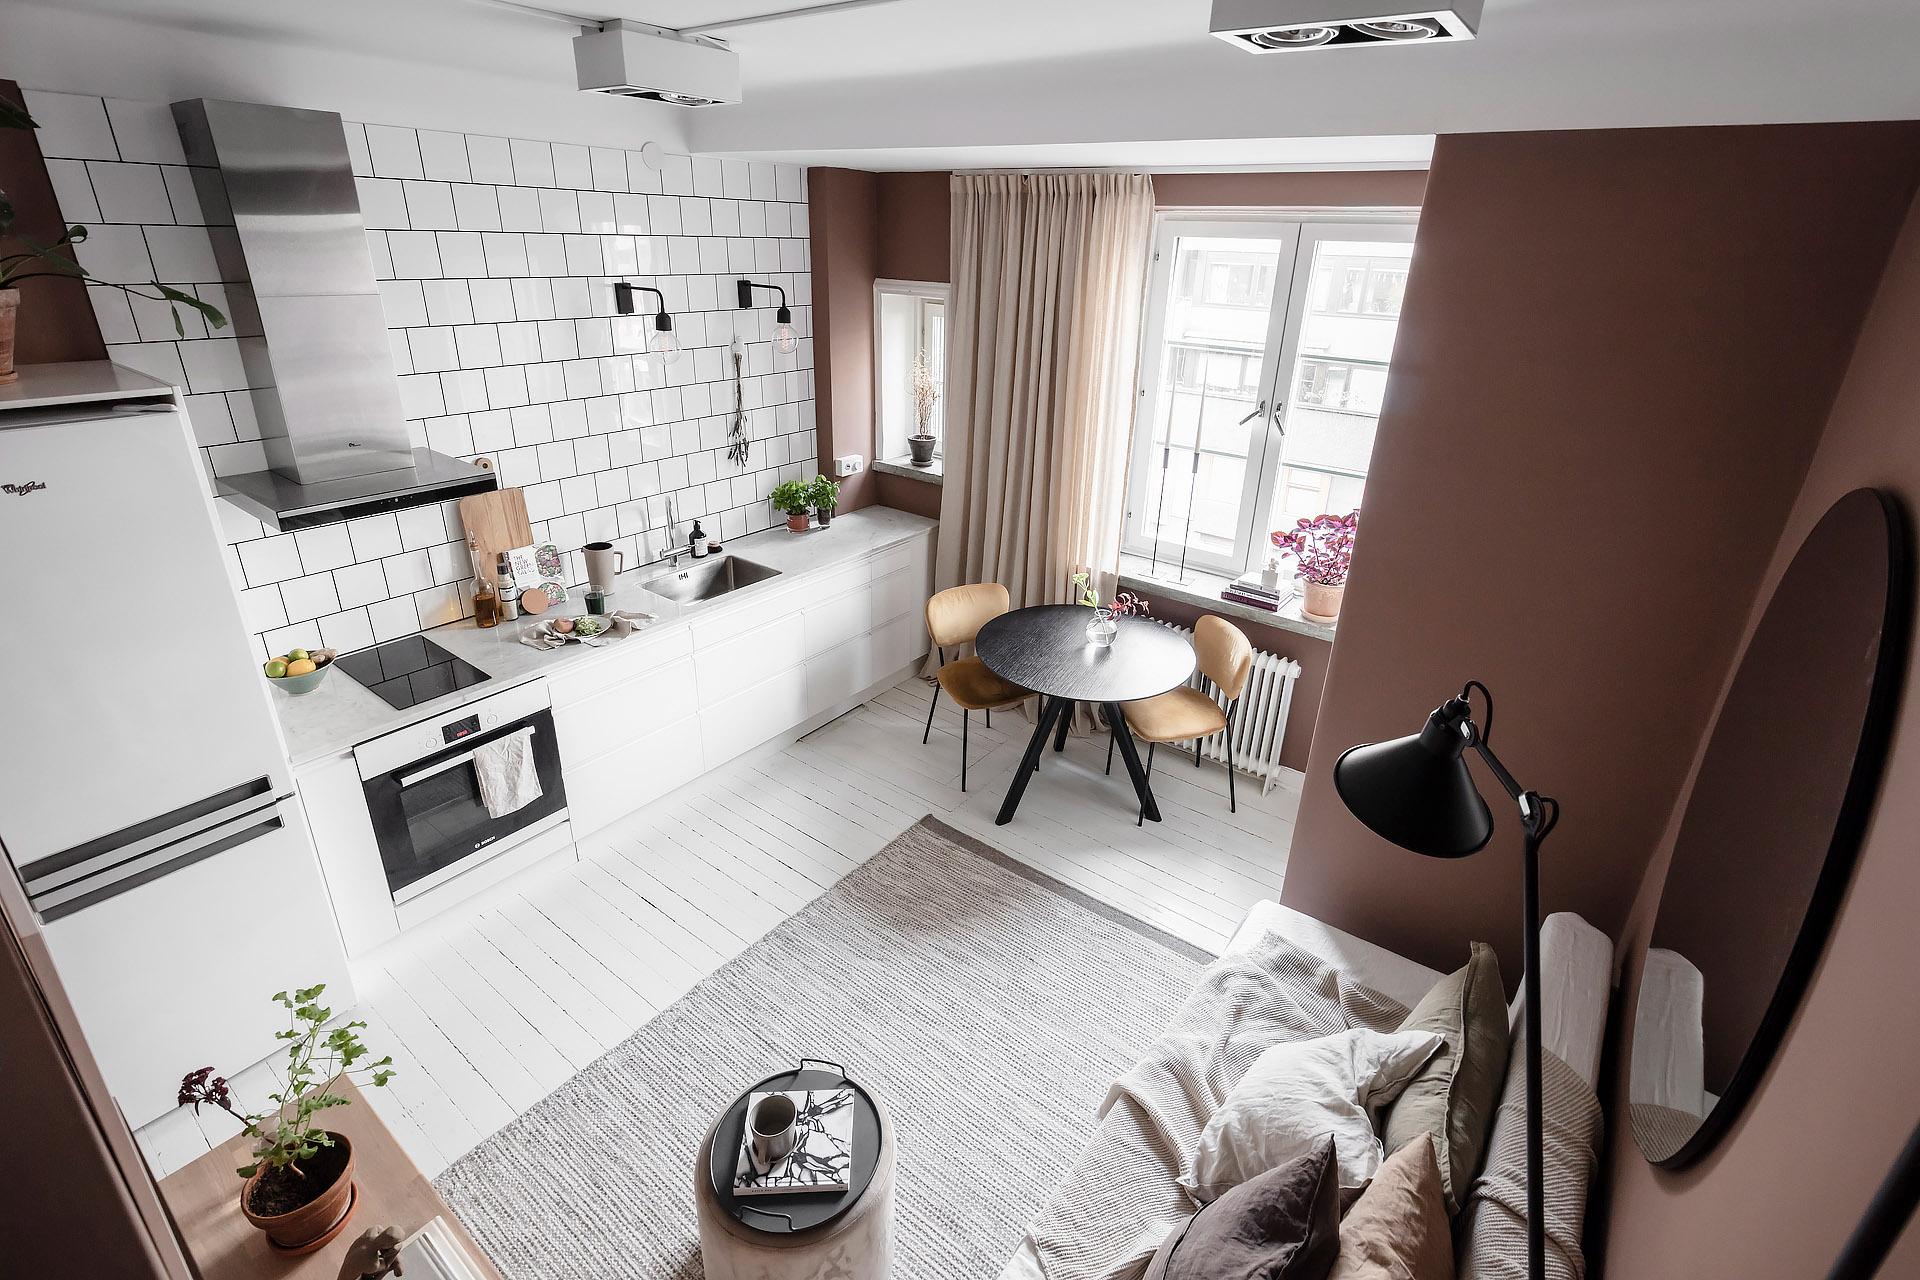 alvhem,公寓设计,小户型设计,瑞典,公寓设计案例,公寓设计方案,阁楼床,阁楼,北欧风格小公寓